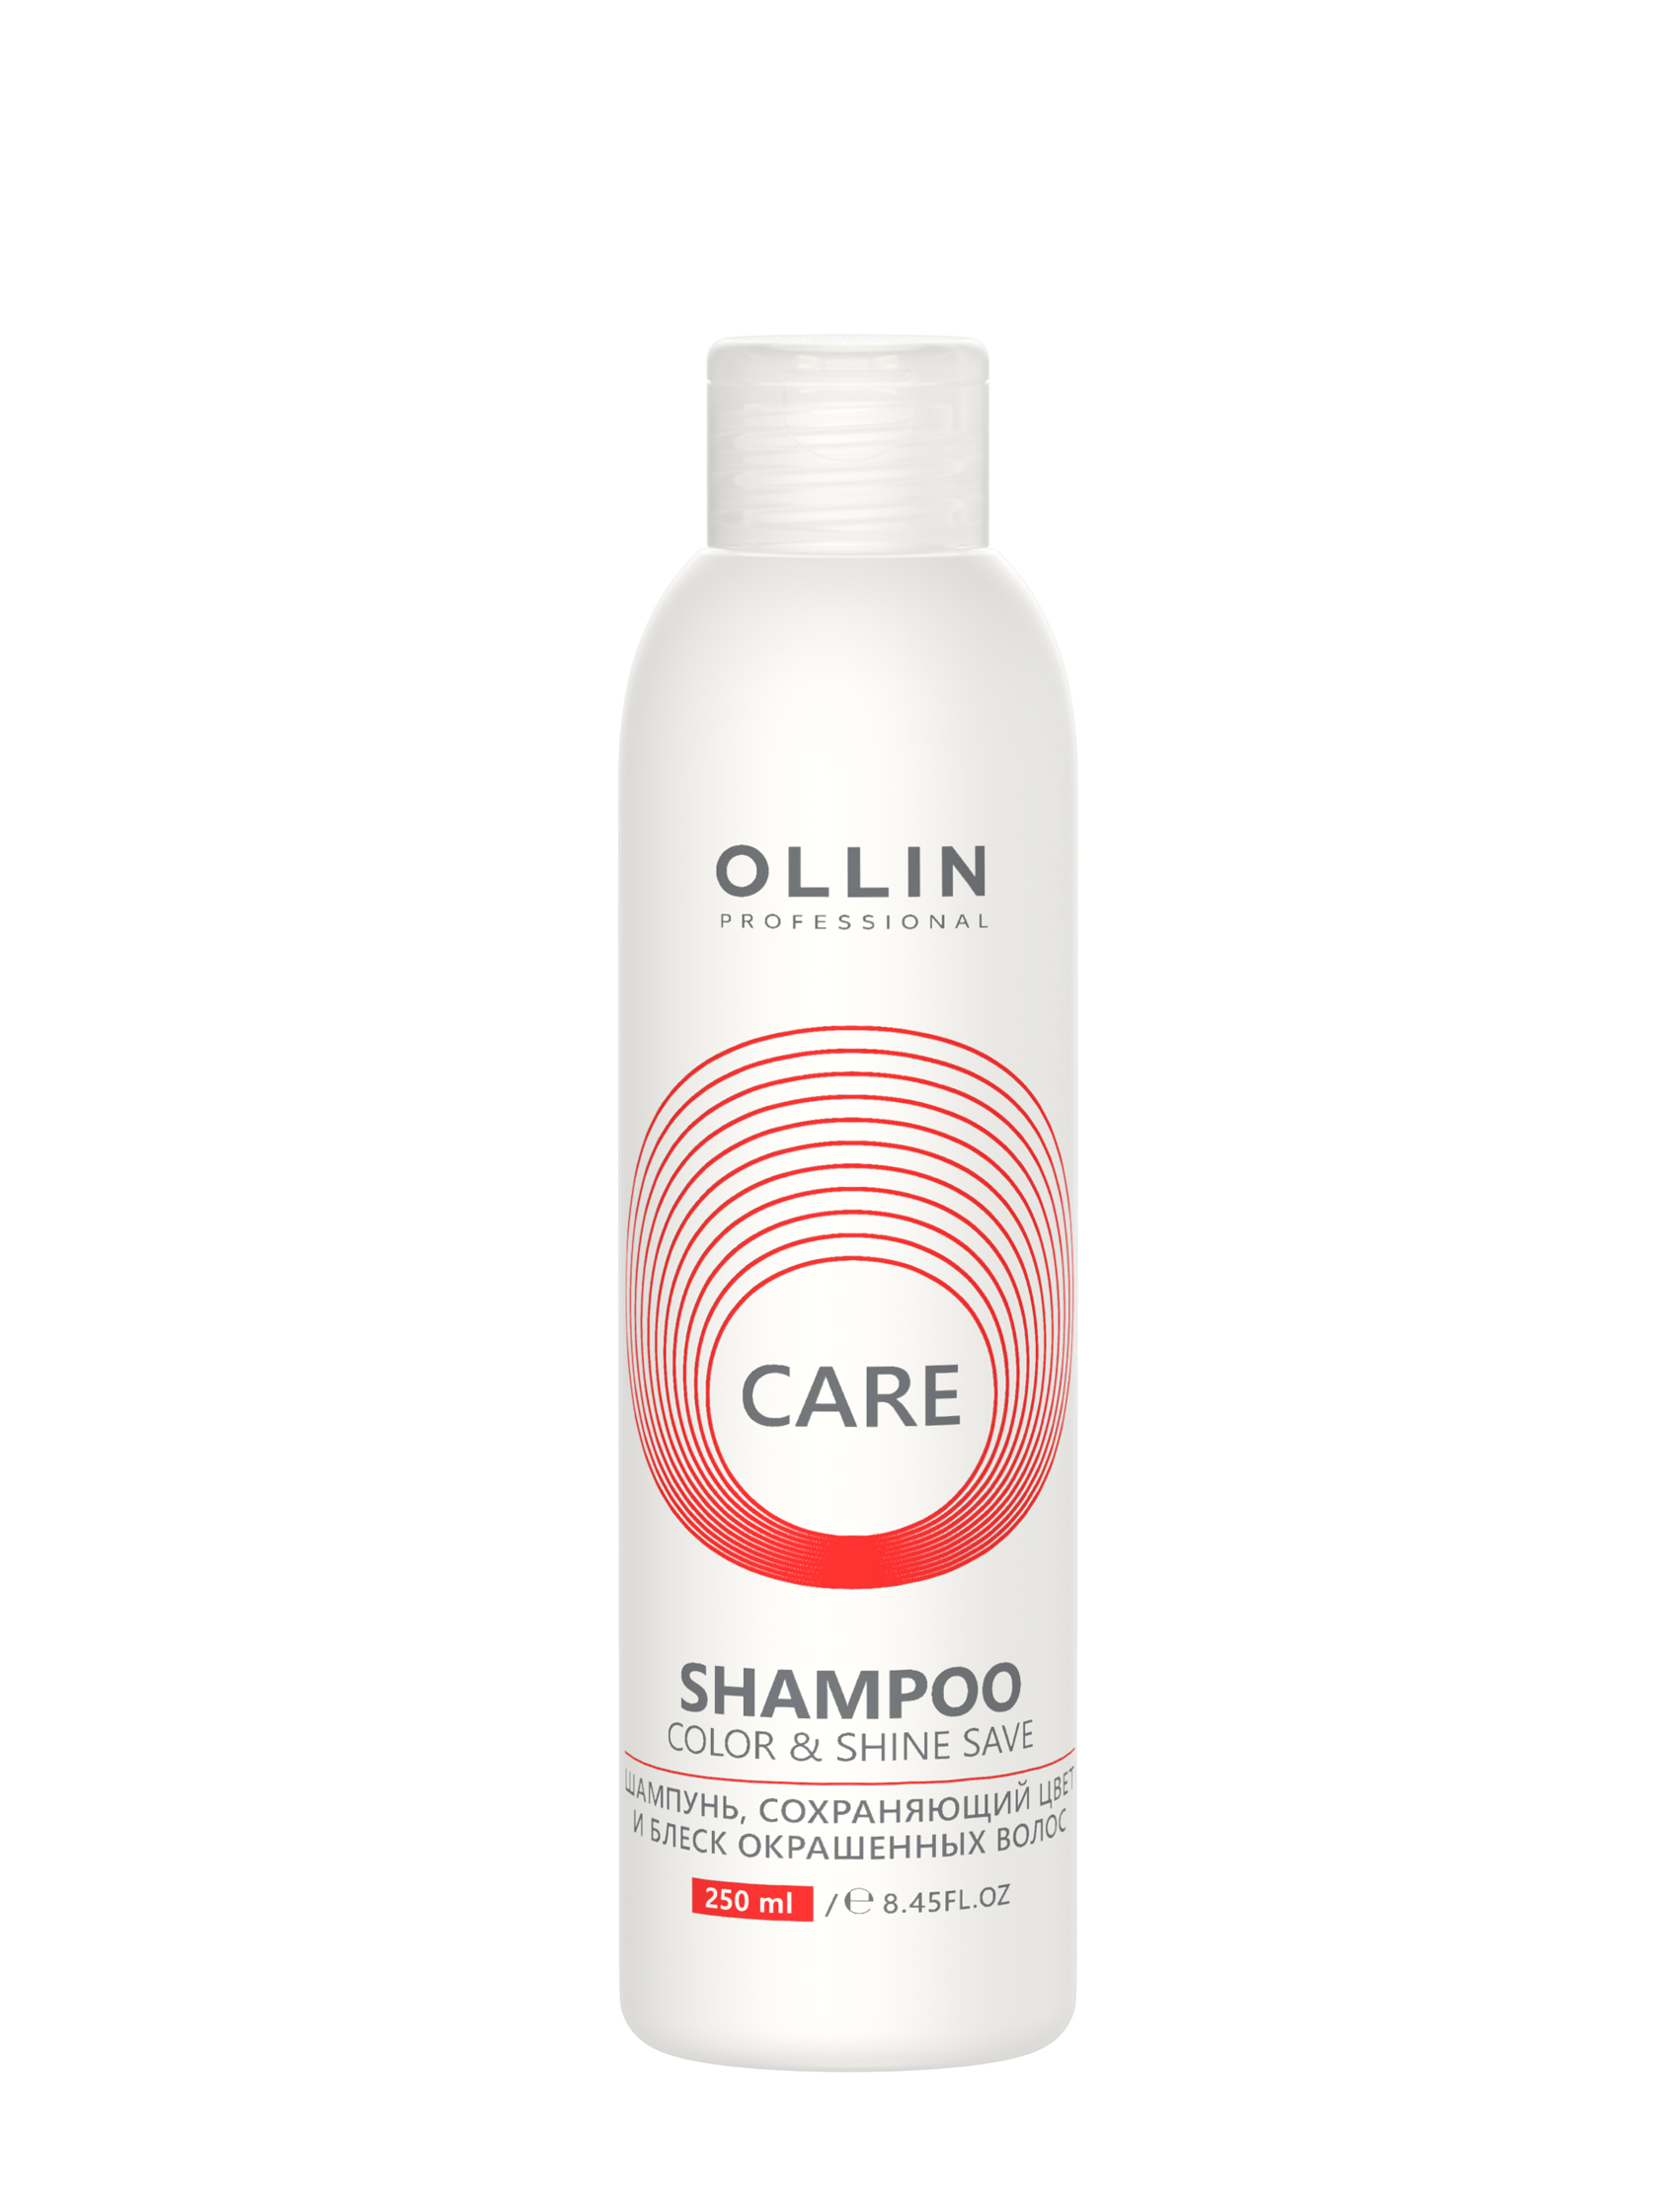 OLLIN CARE Шампунь, сохраняющий цвет  250мл и блеск окрашенных волос